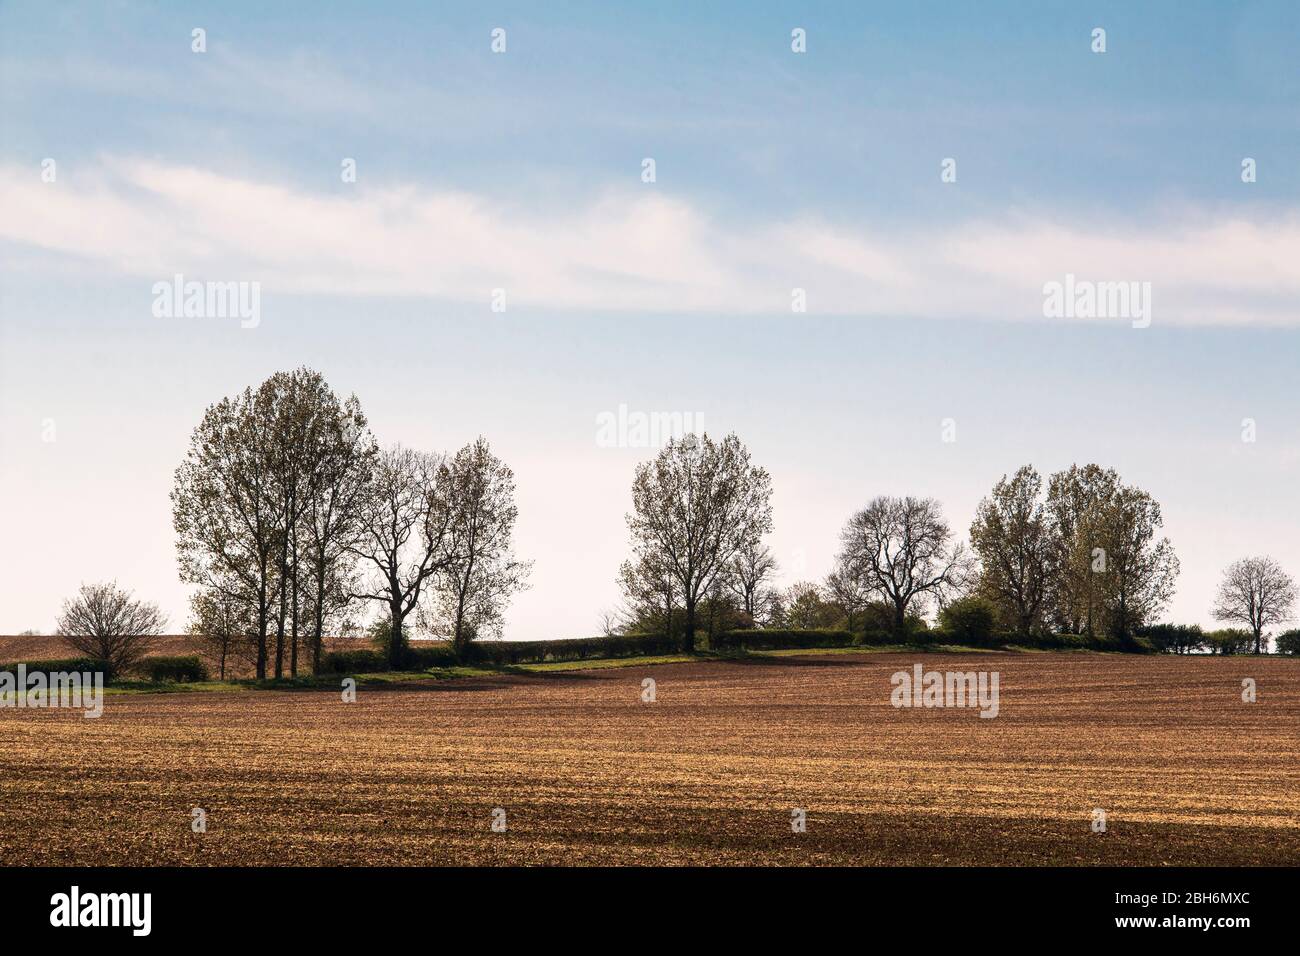 Une image des terres agricoles et de hedgeriw lors d'une belle journée de printemps. Tourné près de Kibworth Harcourt, Leicestershire, Angleterre, Royaume-Uni. Banque D'Images